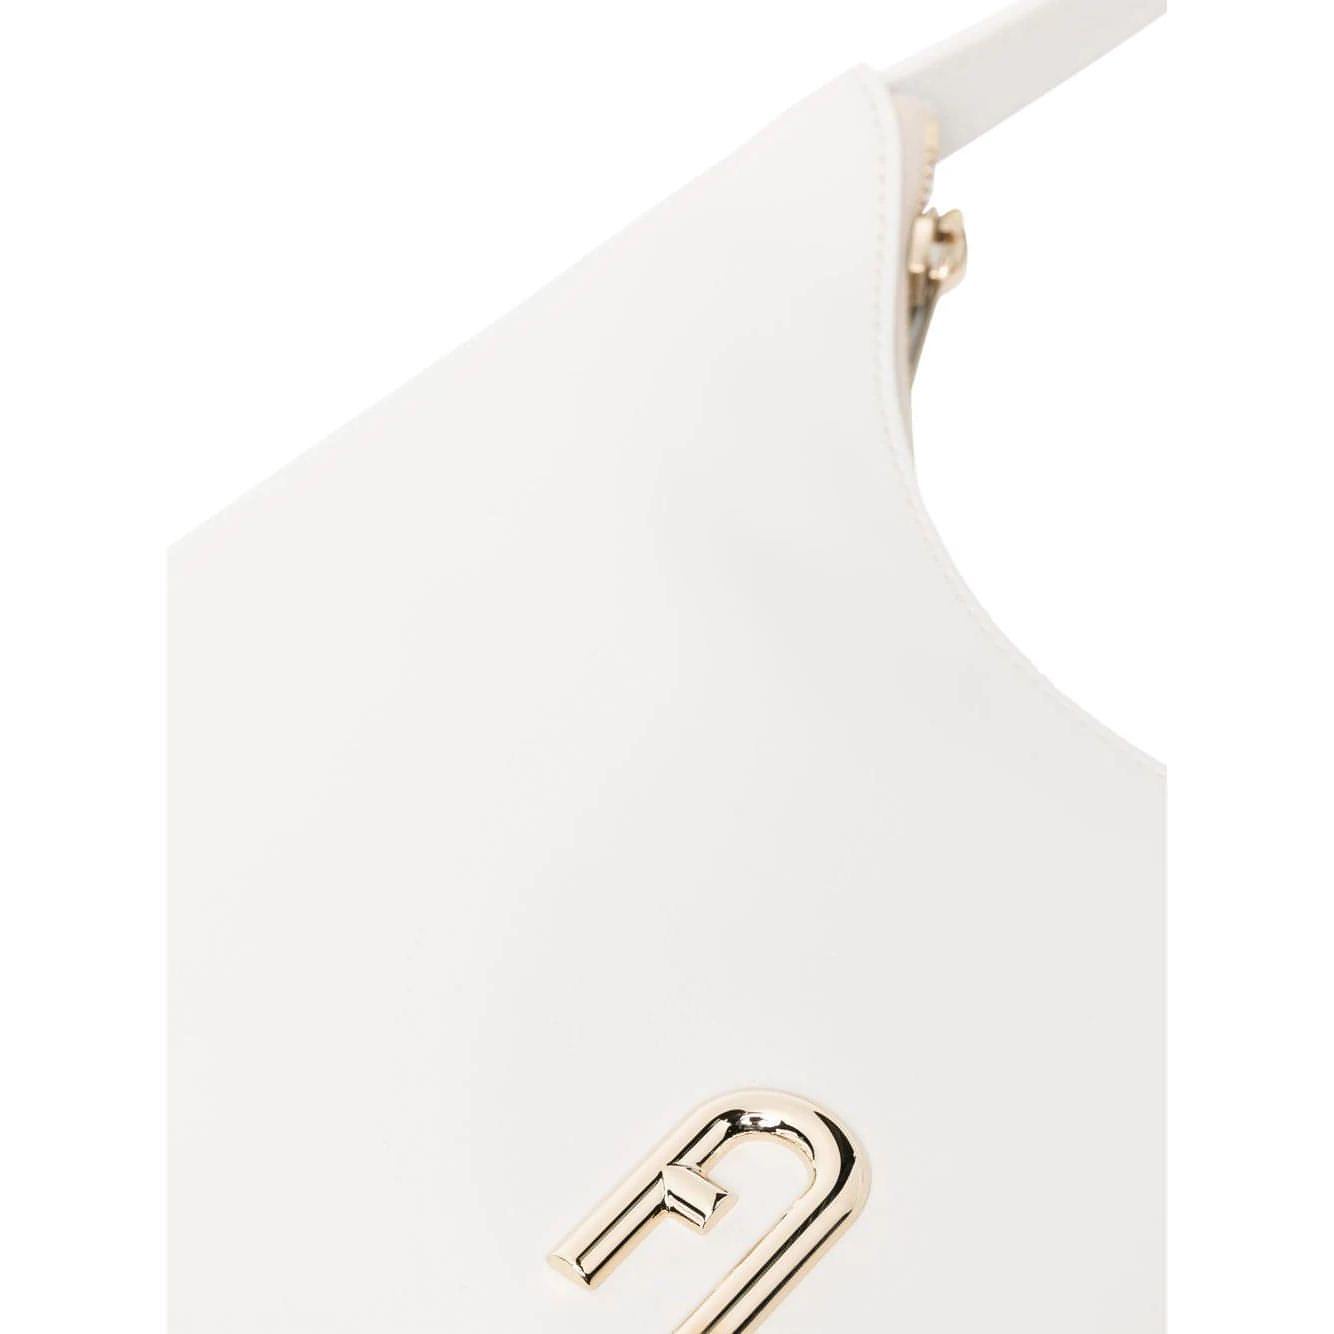 FURLA moteriška balta rankinė Furla diamante s shoulder bag